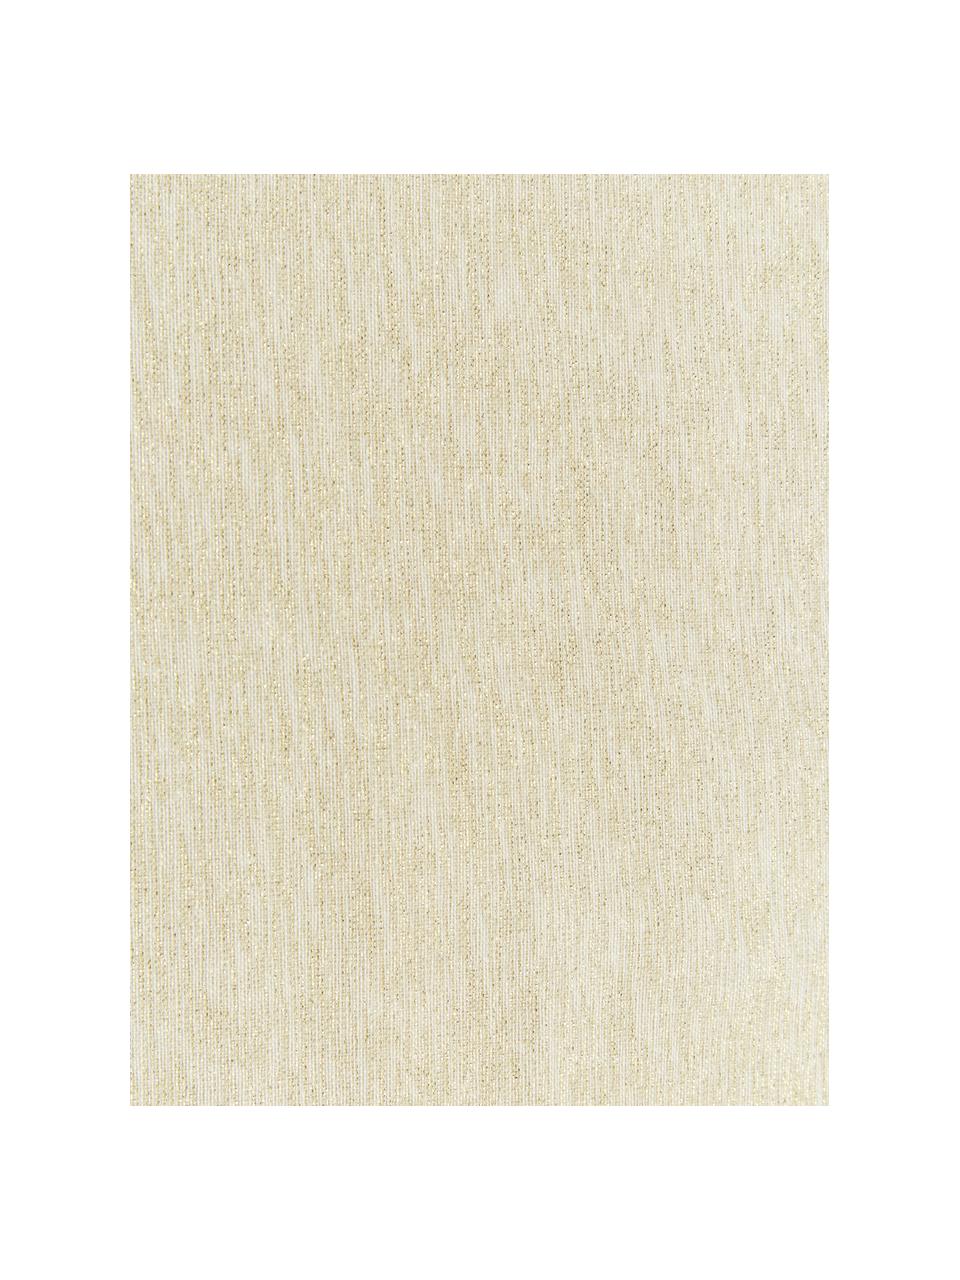 Chemin de table en coton Vialactea, Coton, Lurex, Beige, couleur dorée, larg. 2 cm x long. 1,5 m